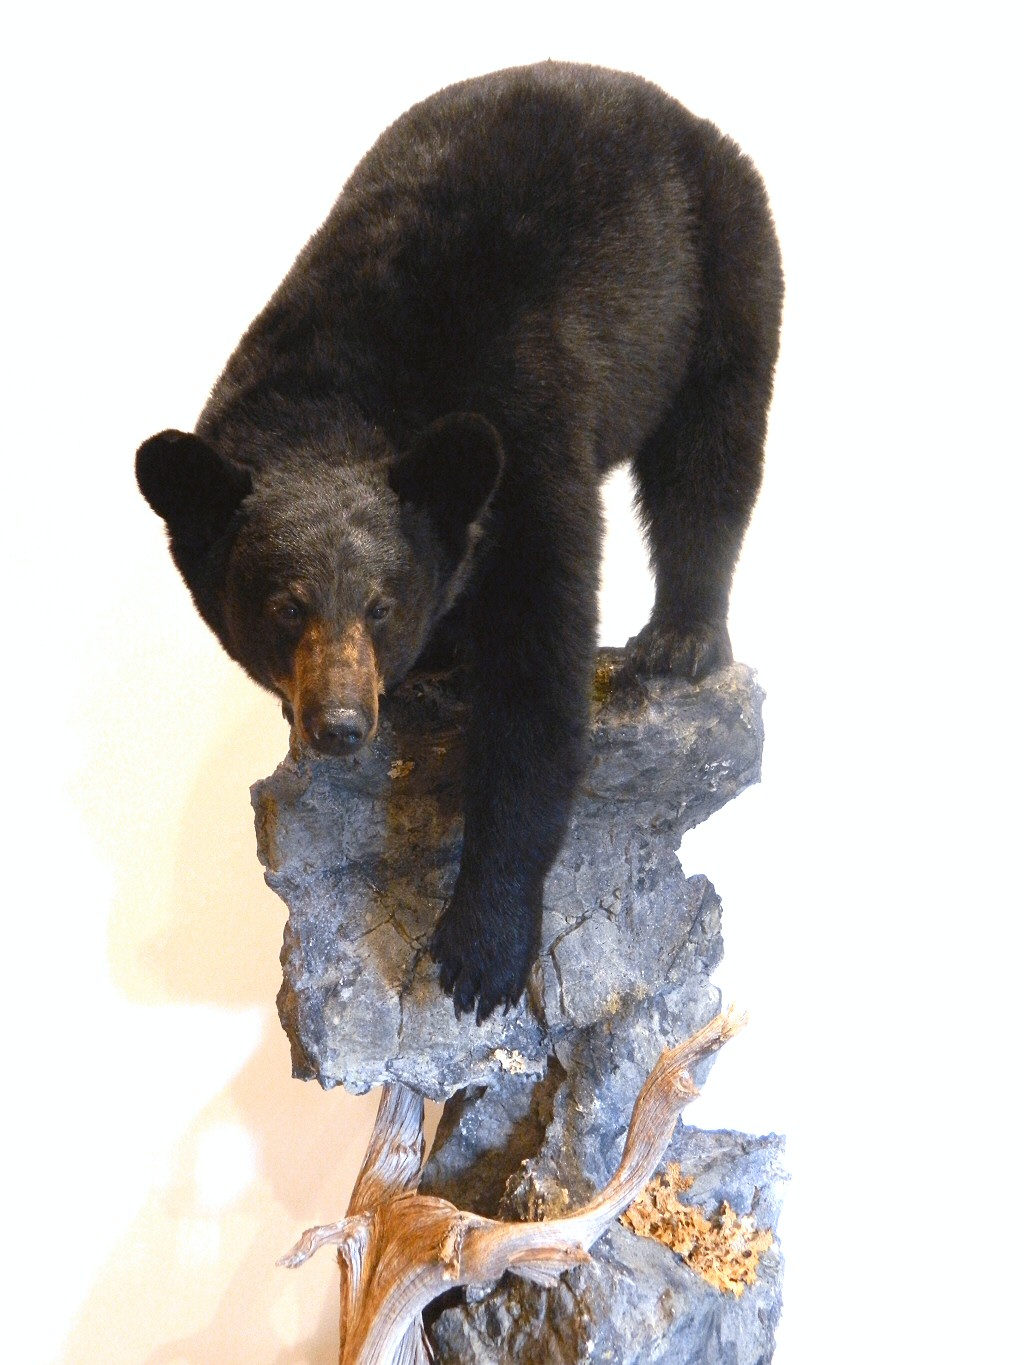 Black Bear Taxidermy Full Body Floor Mounts - Black Bears Full Body Mounts On Custom Bases Using The Finest Habitat Materials. 